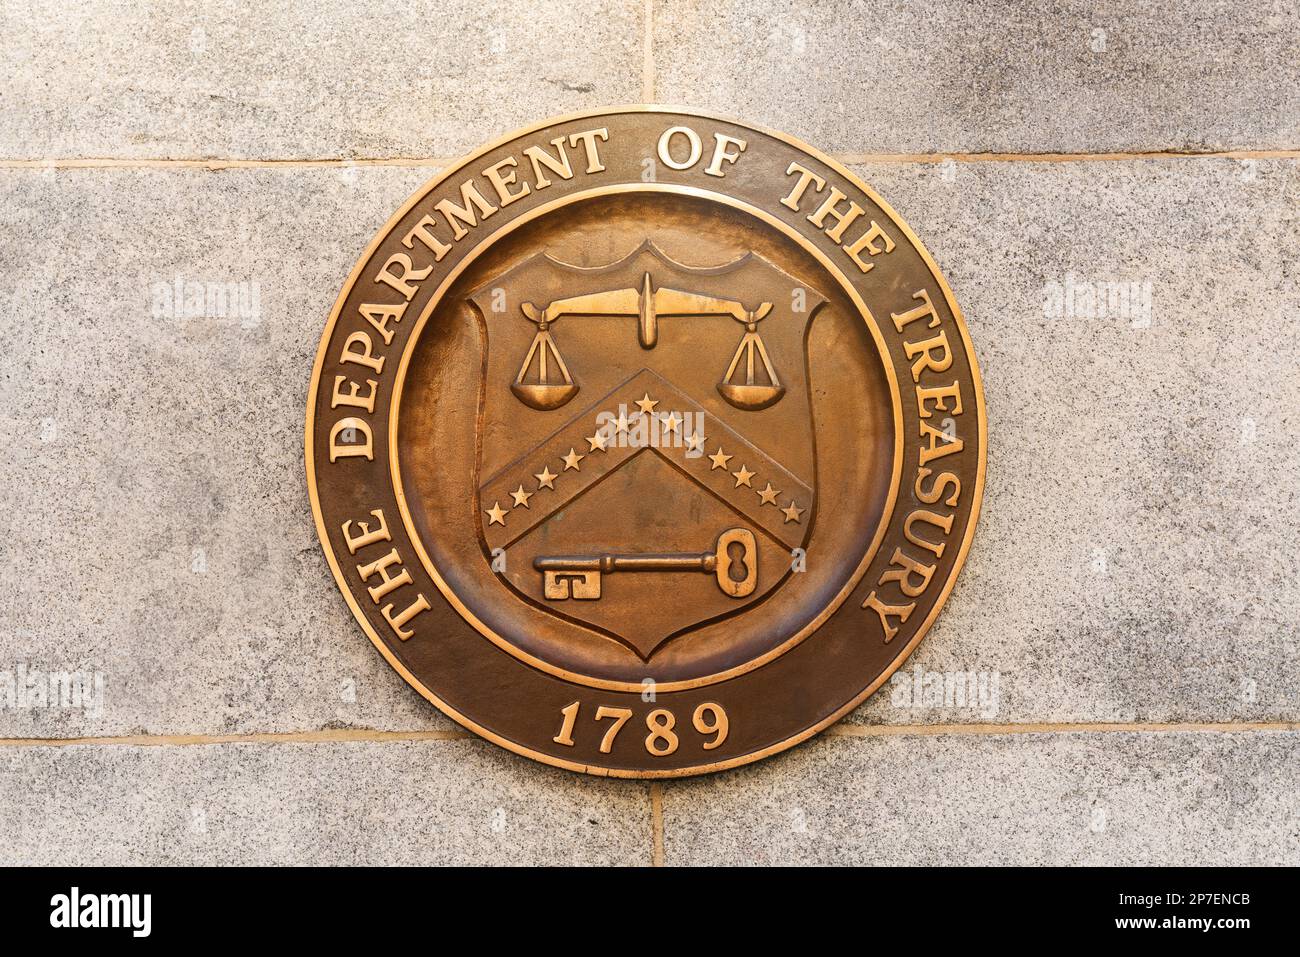 US-Finanzministerium in Washington, D.C., USA. Versiegeln Sie das Gebäude. Stockfoto